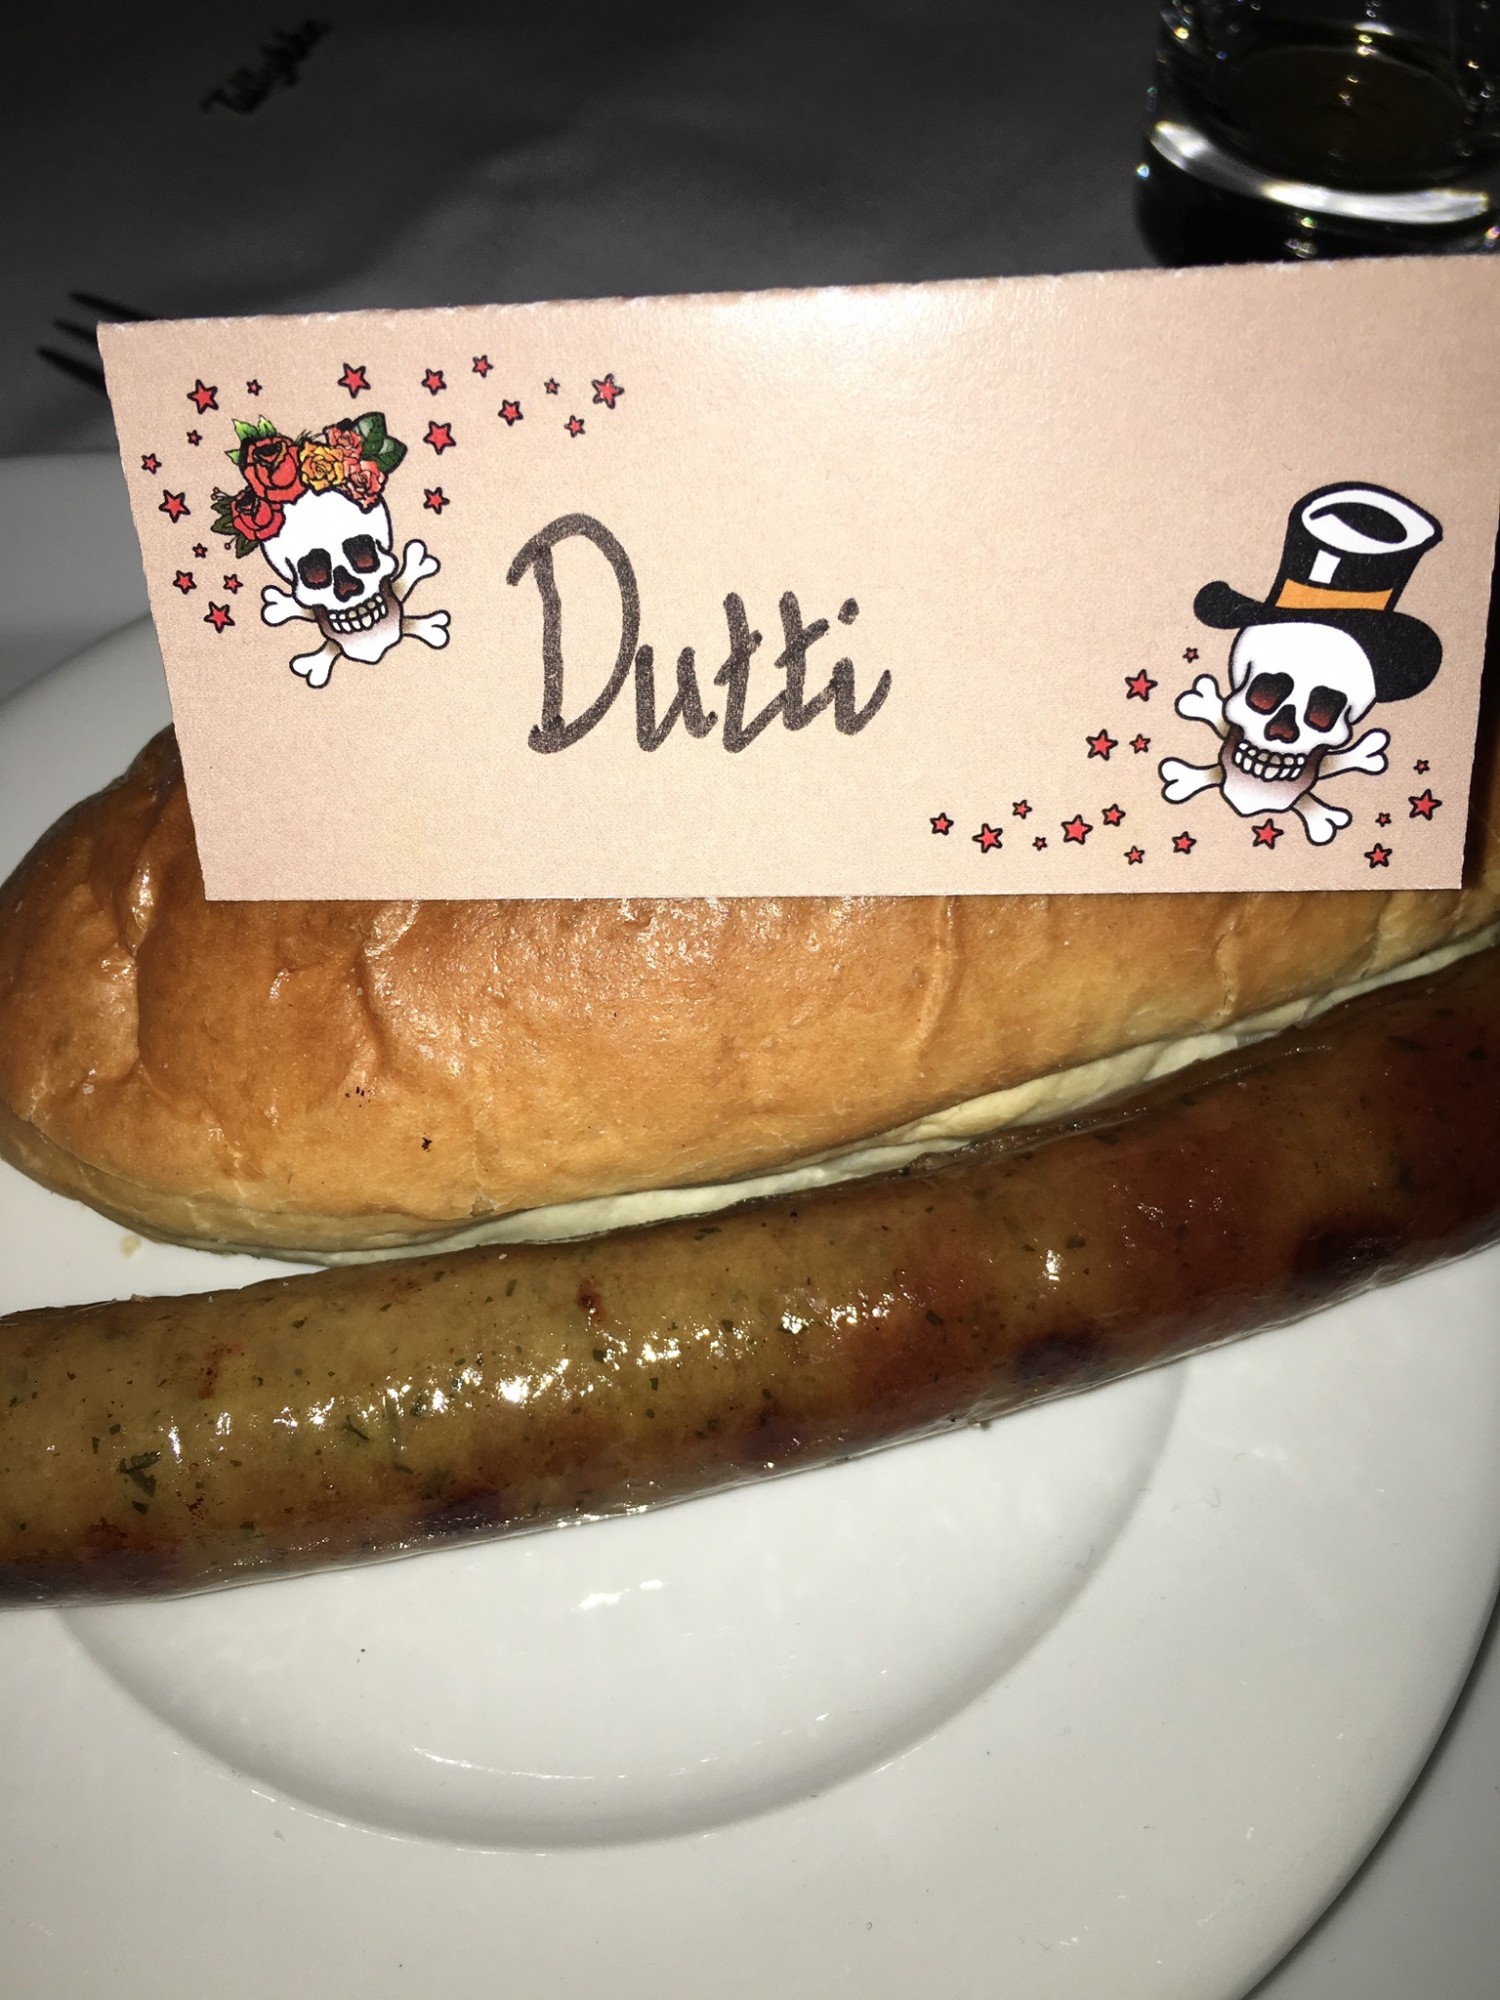 Juhubiii Hot dogs-jeg elsker hot dogs ! 